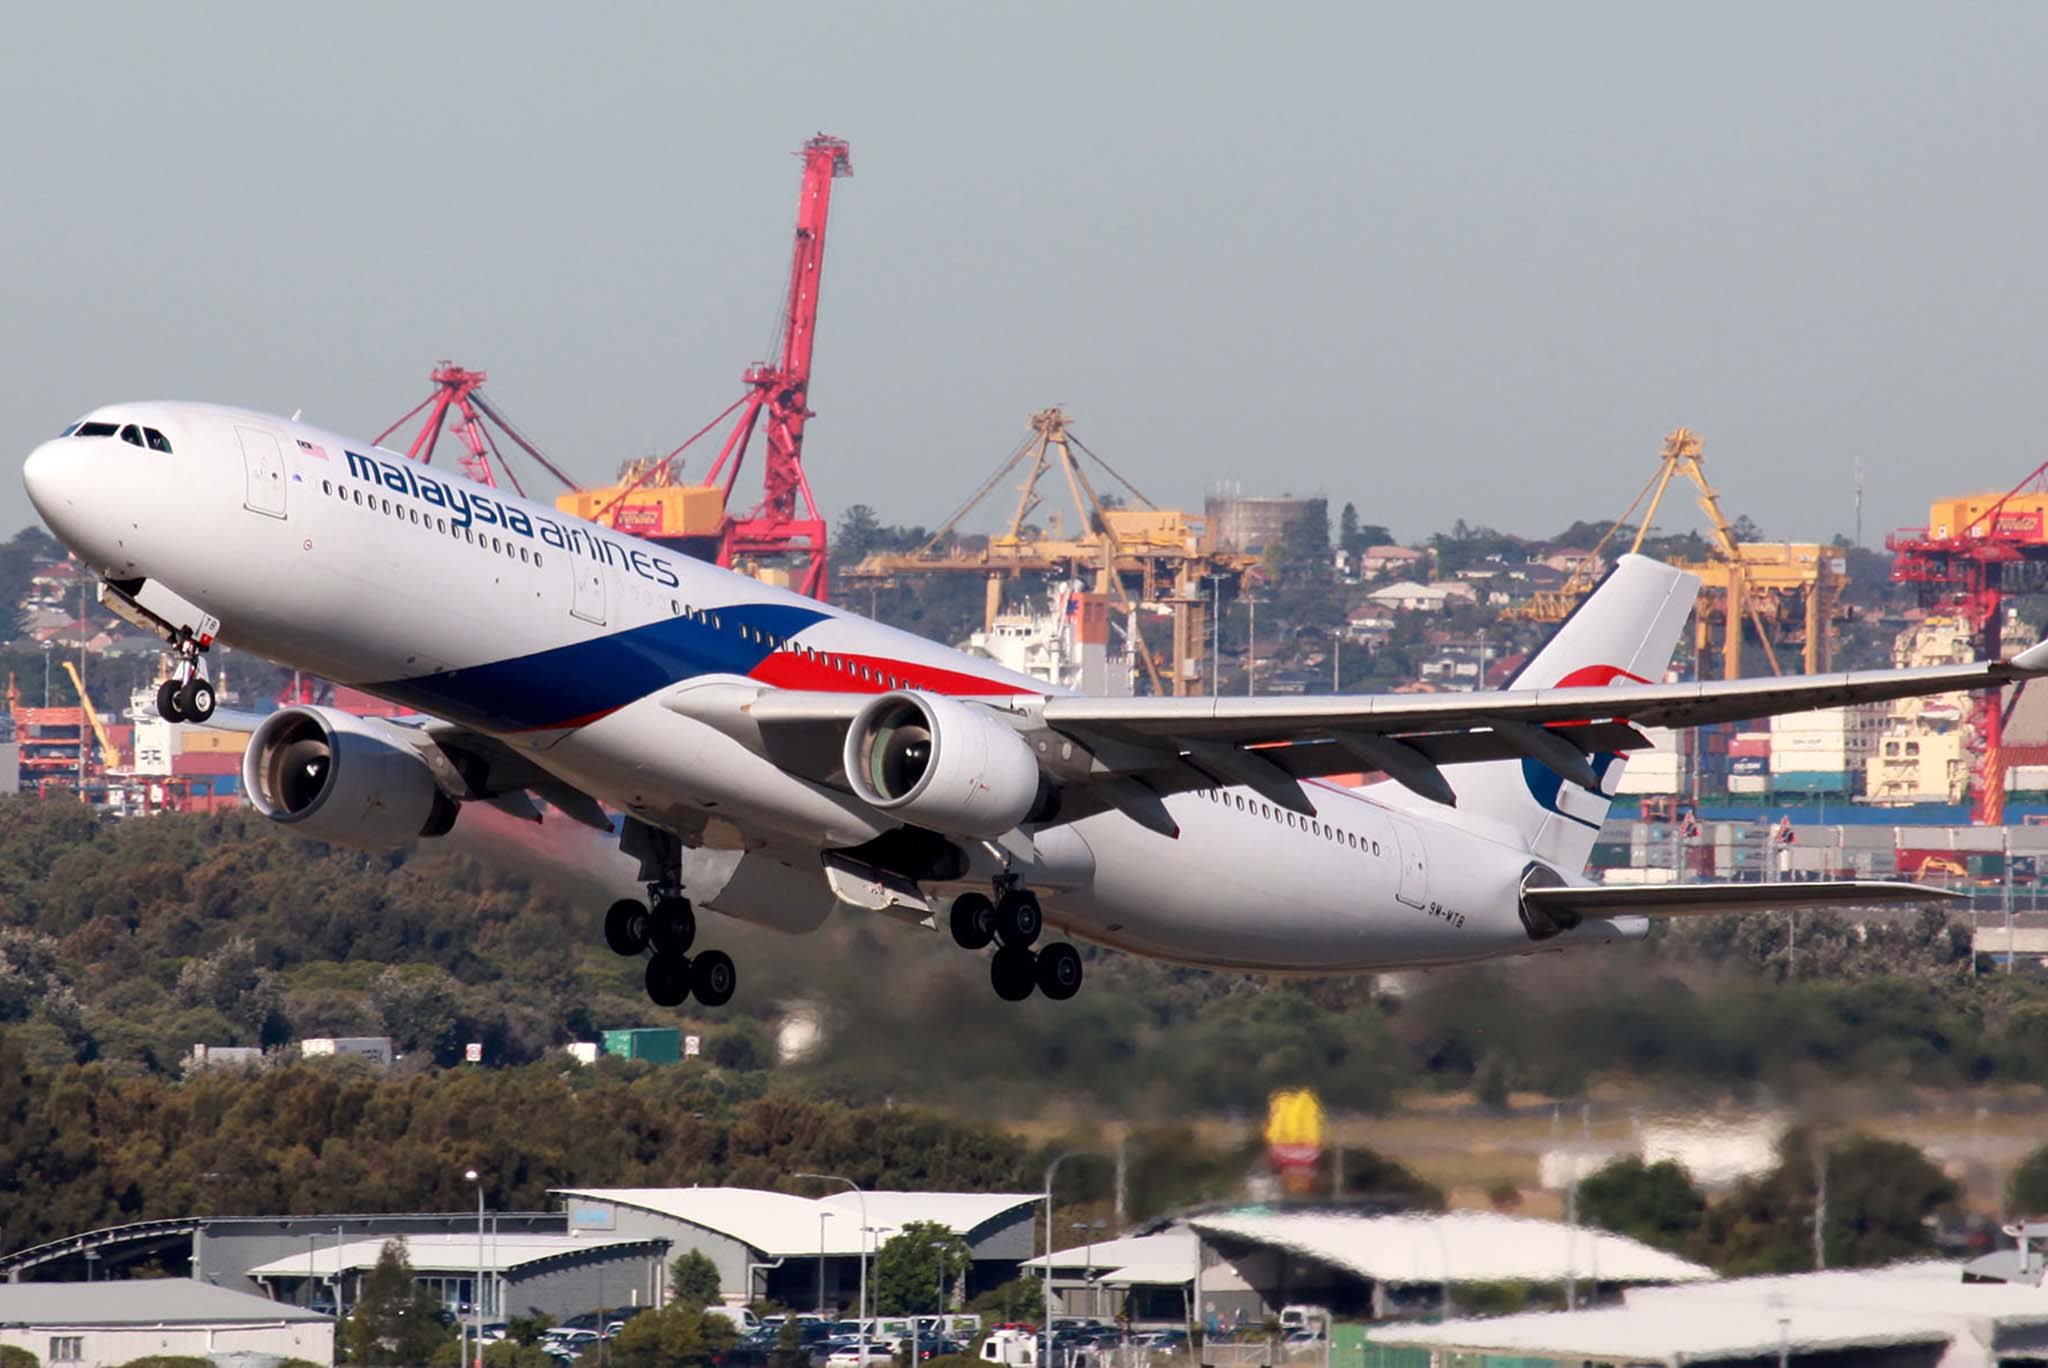 Máy bay Malaysia Airlines đáp khẩn cấp tại Úc do quên tháo ống bảo vệ pitot, 226 người thoát chết